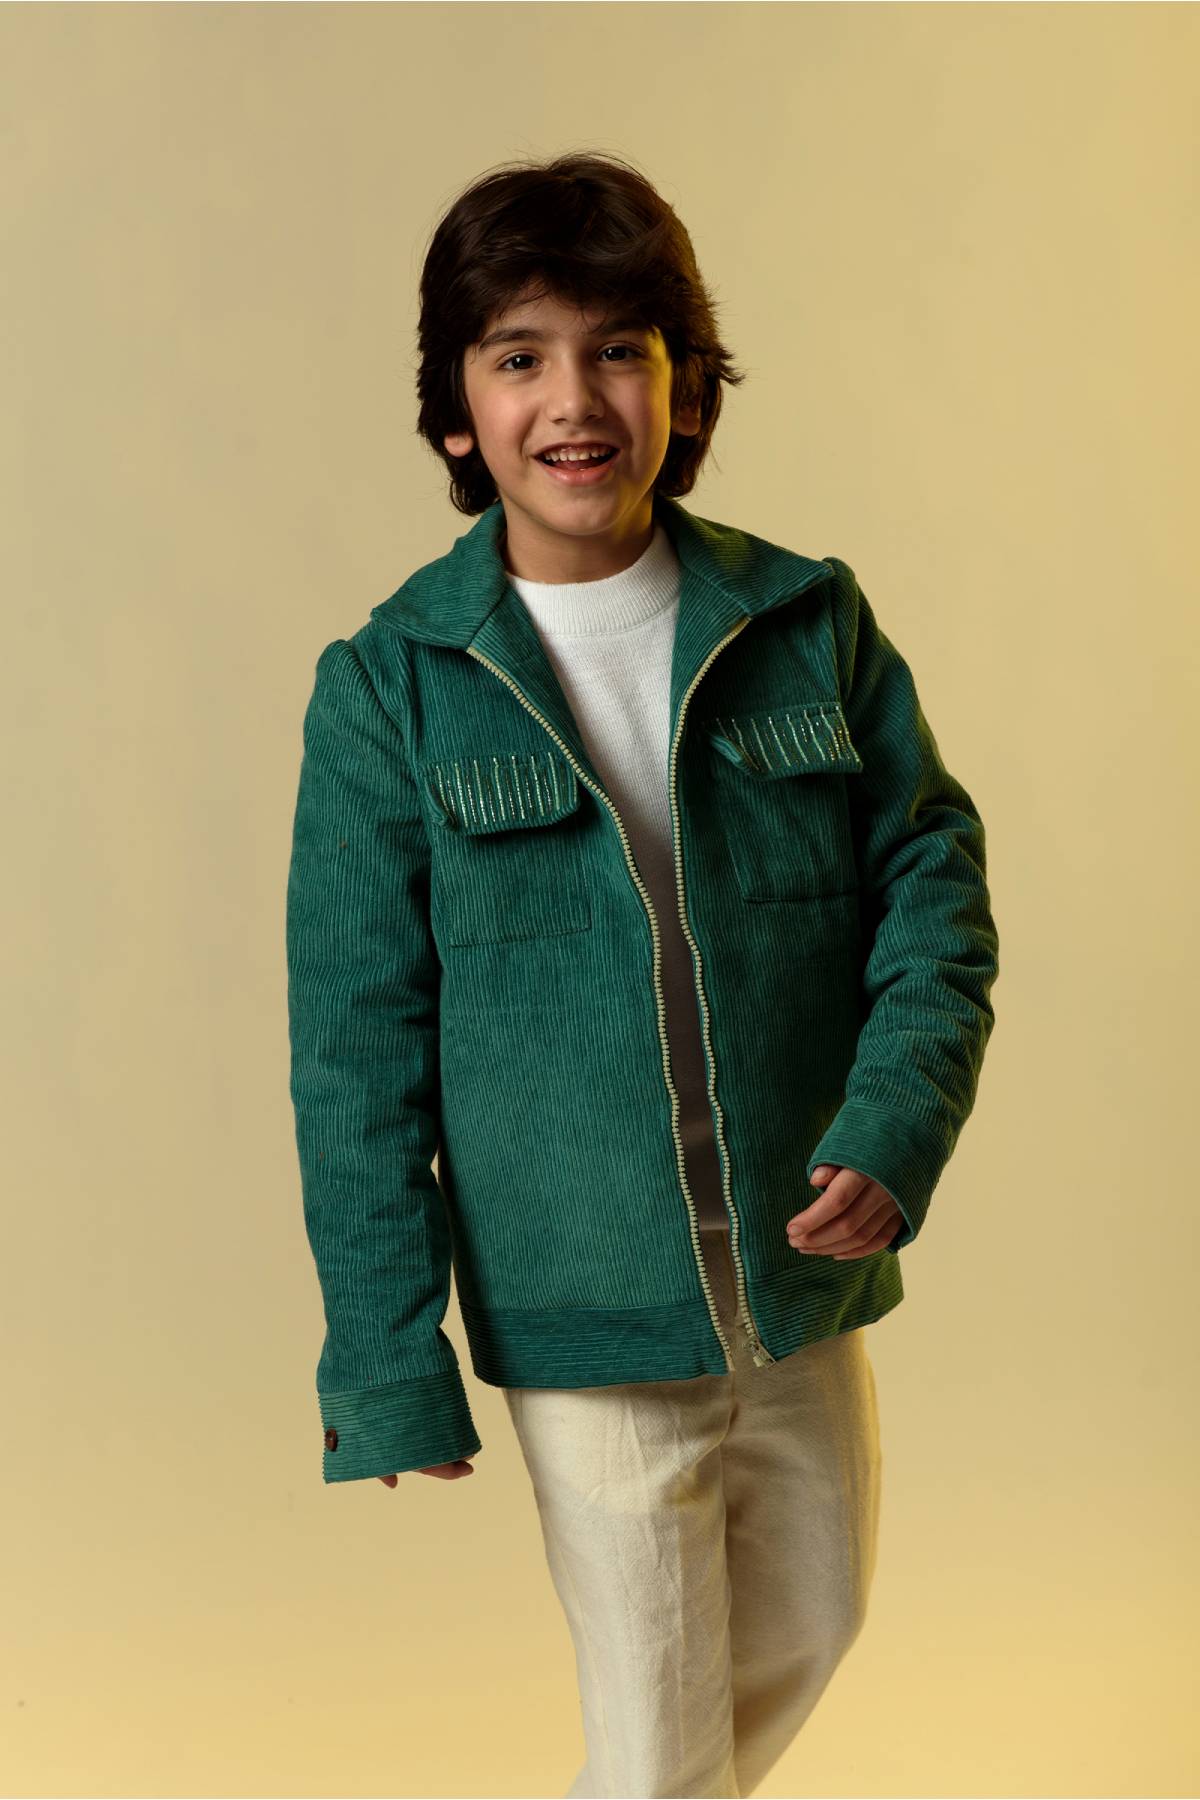 Buy Kids Designer Littleens Corduroy jacket in loose shape with embellished pocket flaps Online at ScrollnShops